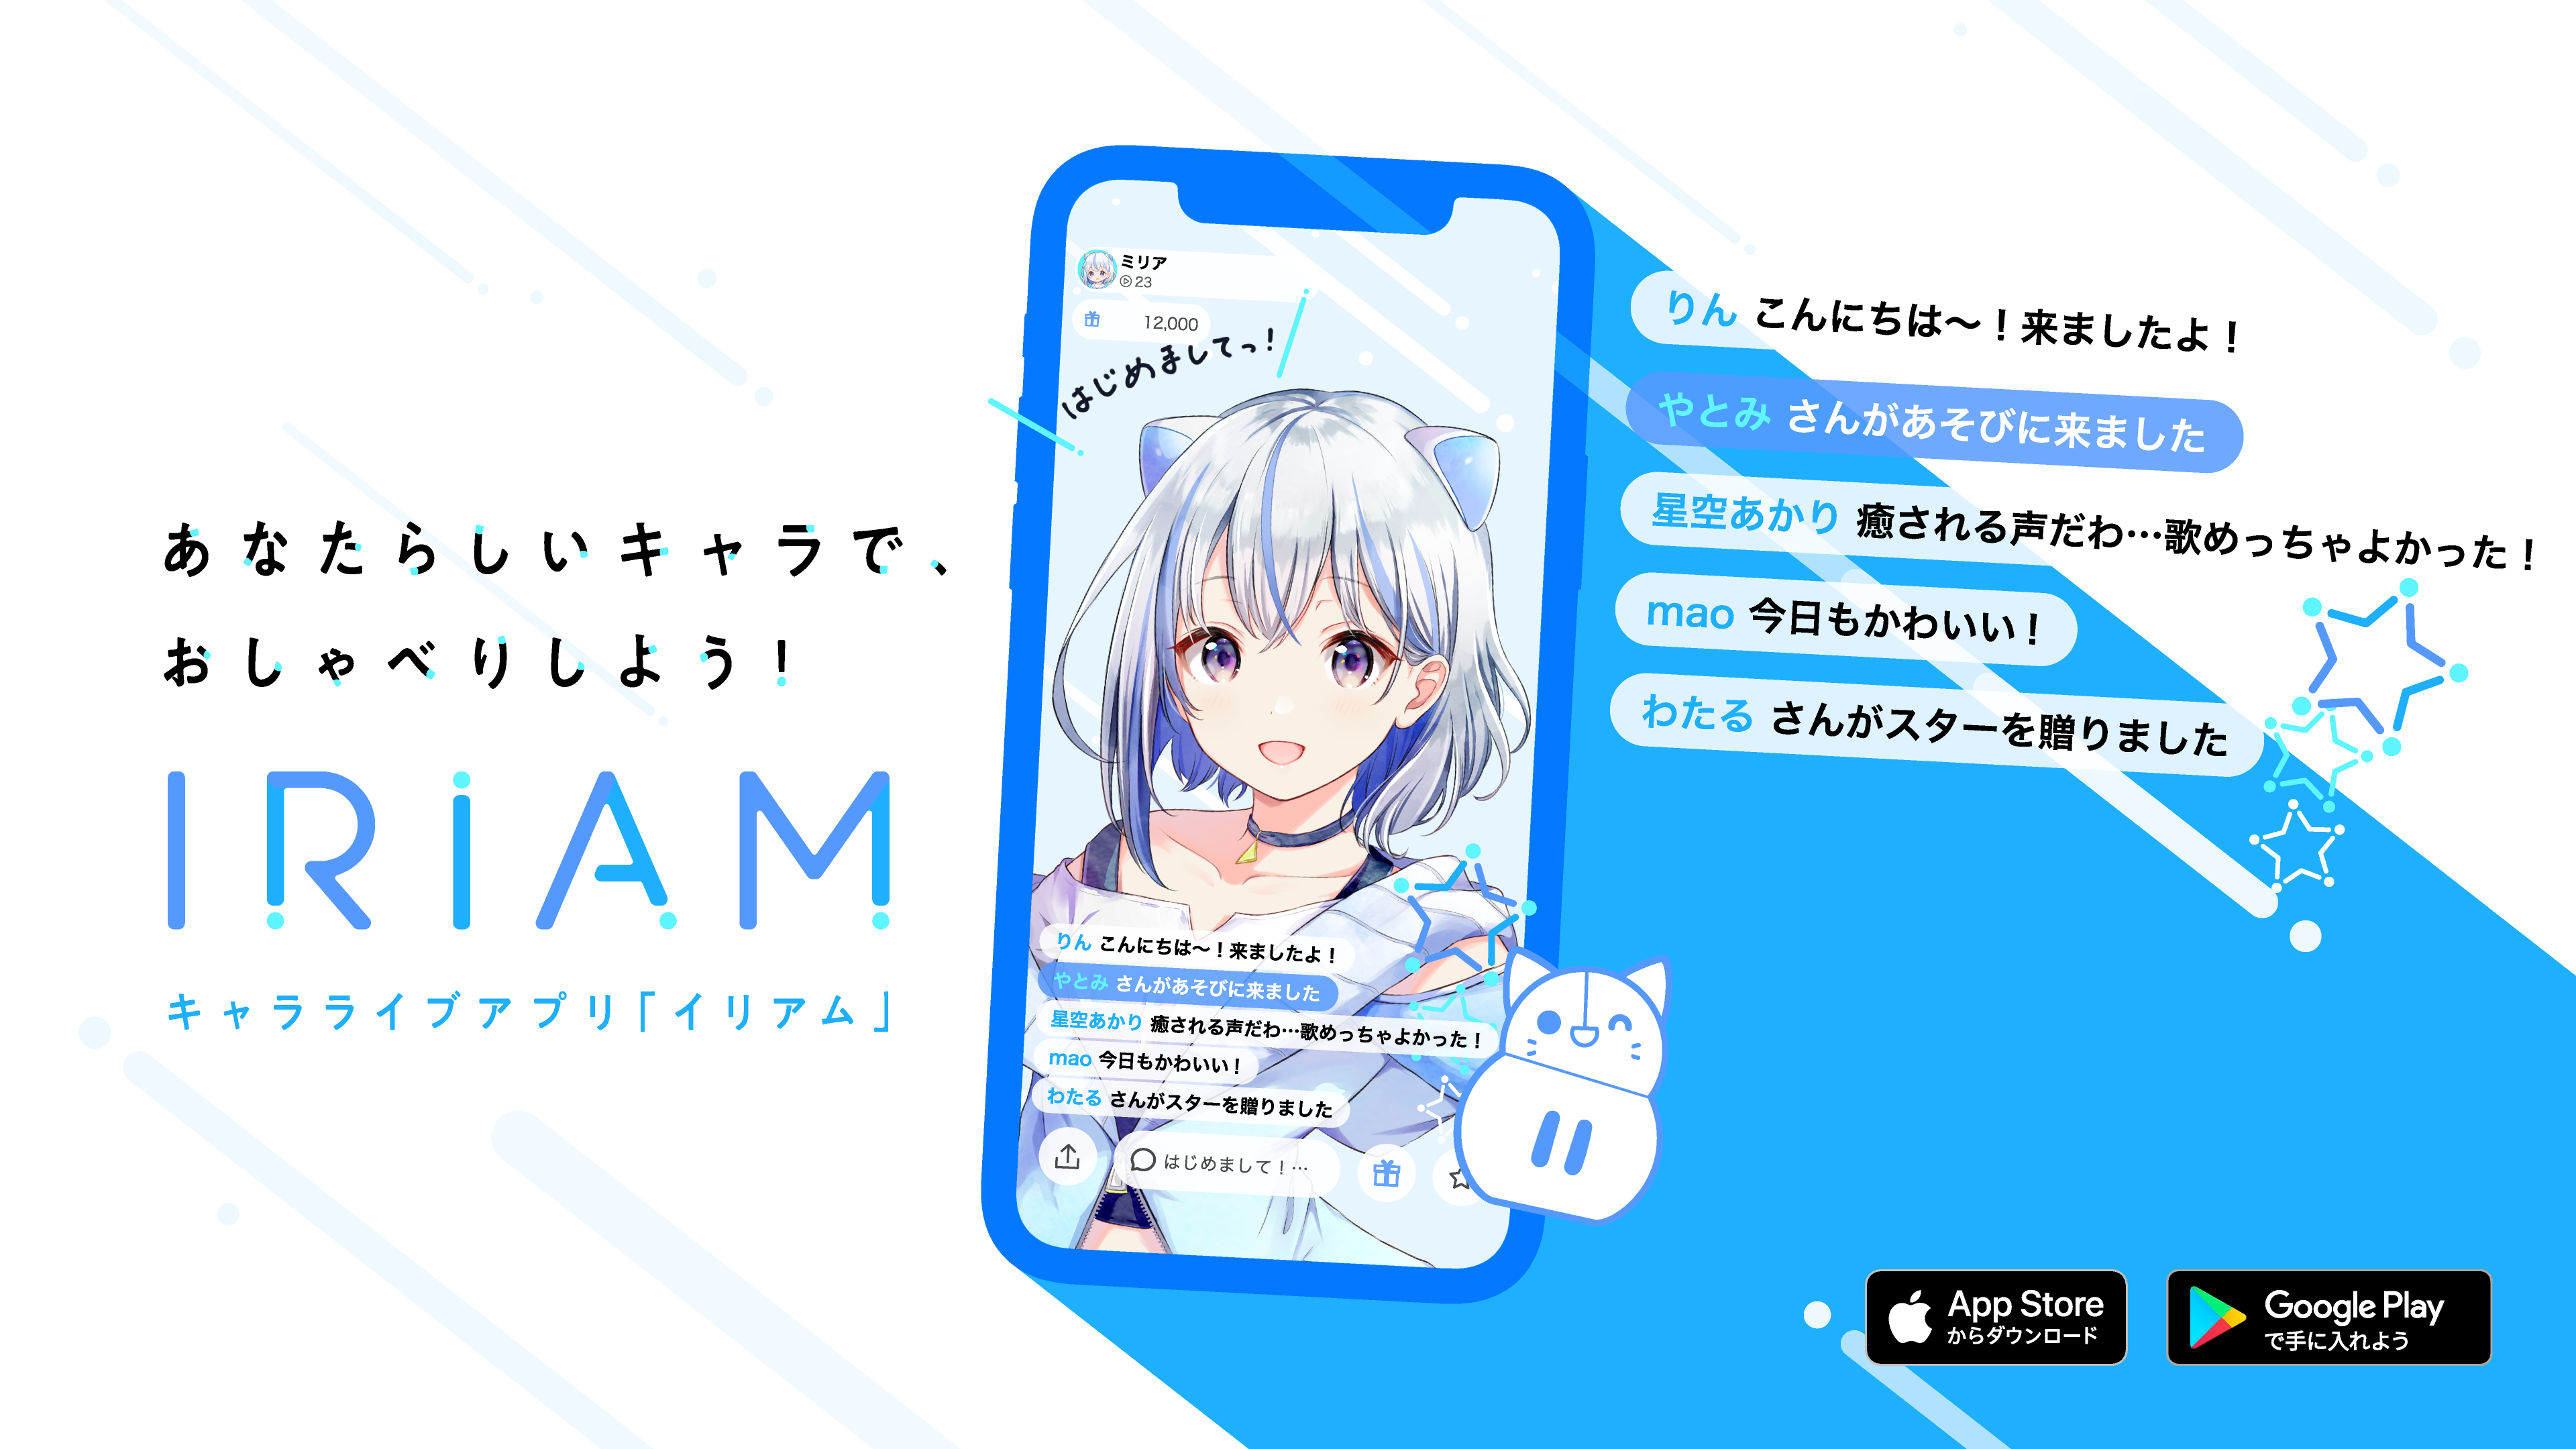 キャラライブアプリ Iriam がリニューアル 1枚のイラストだけで誰でも簡単 にキャラライブができる新機能を正式リリース 株式会社zizaiのプレスリリース